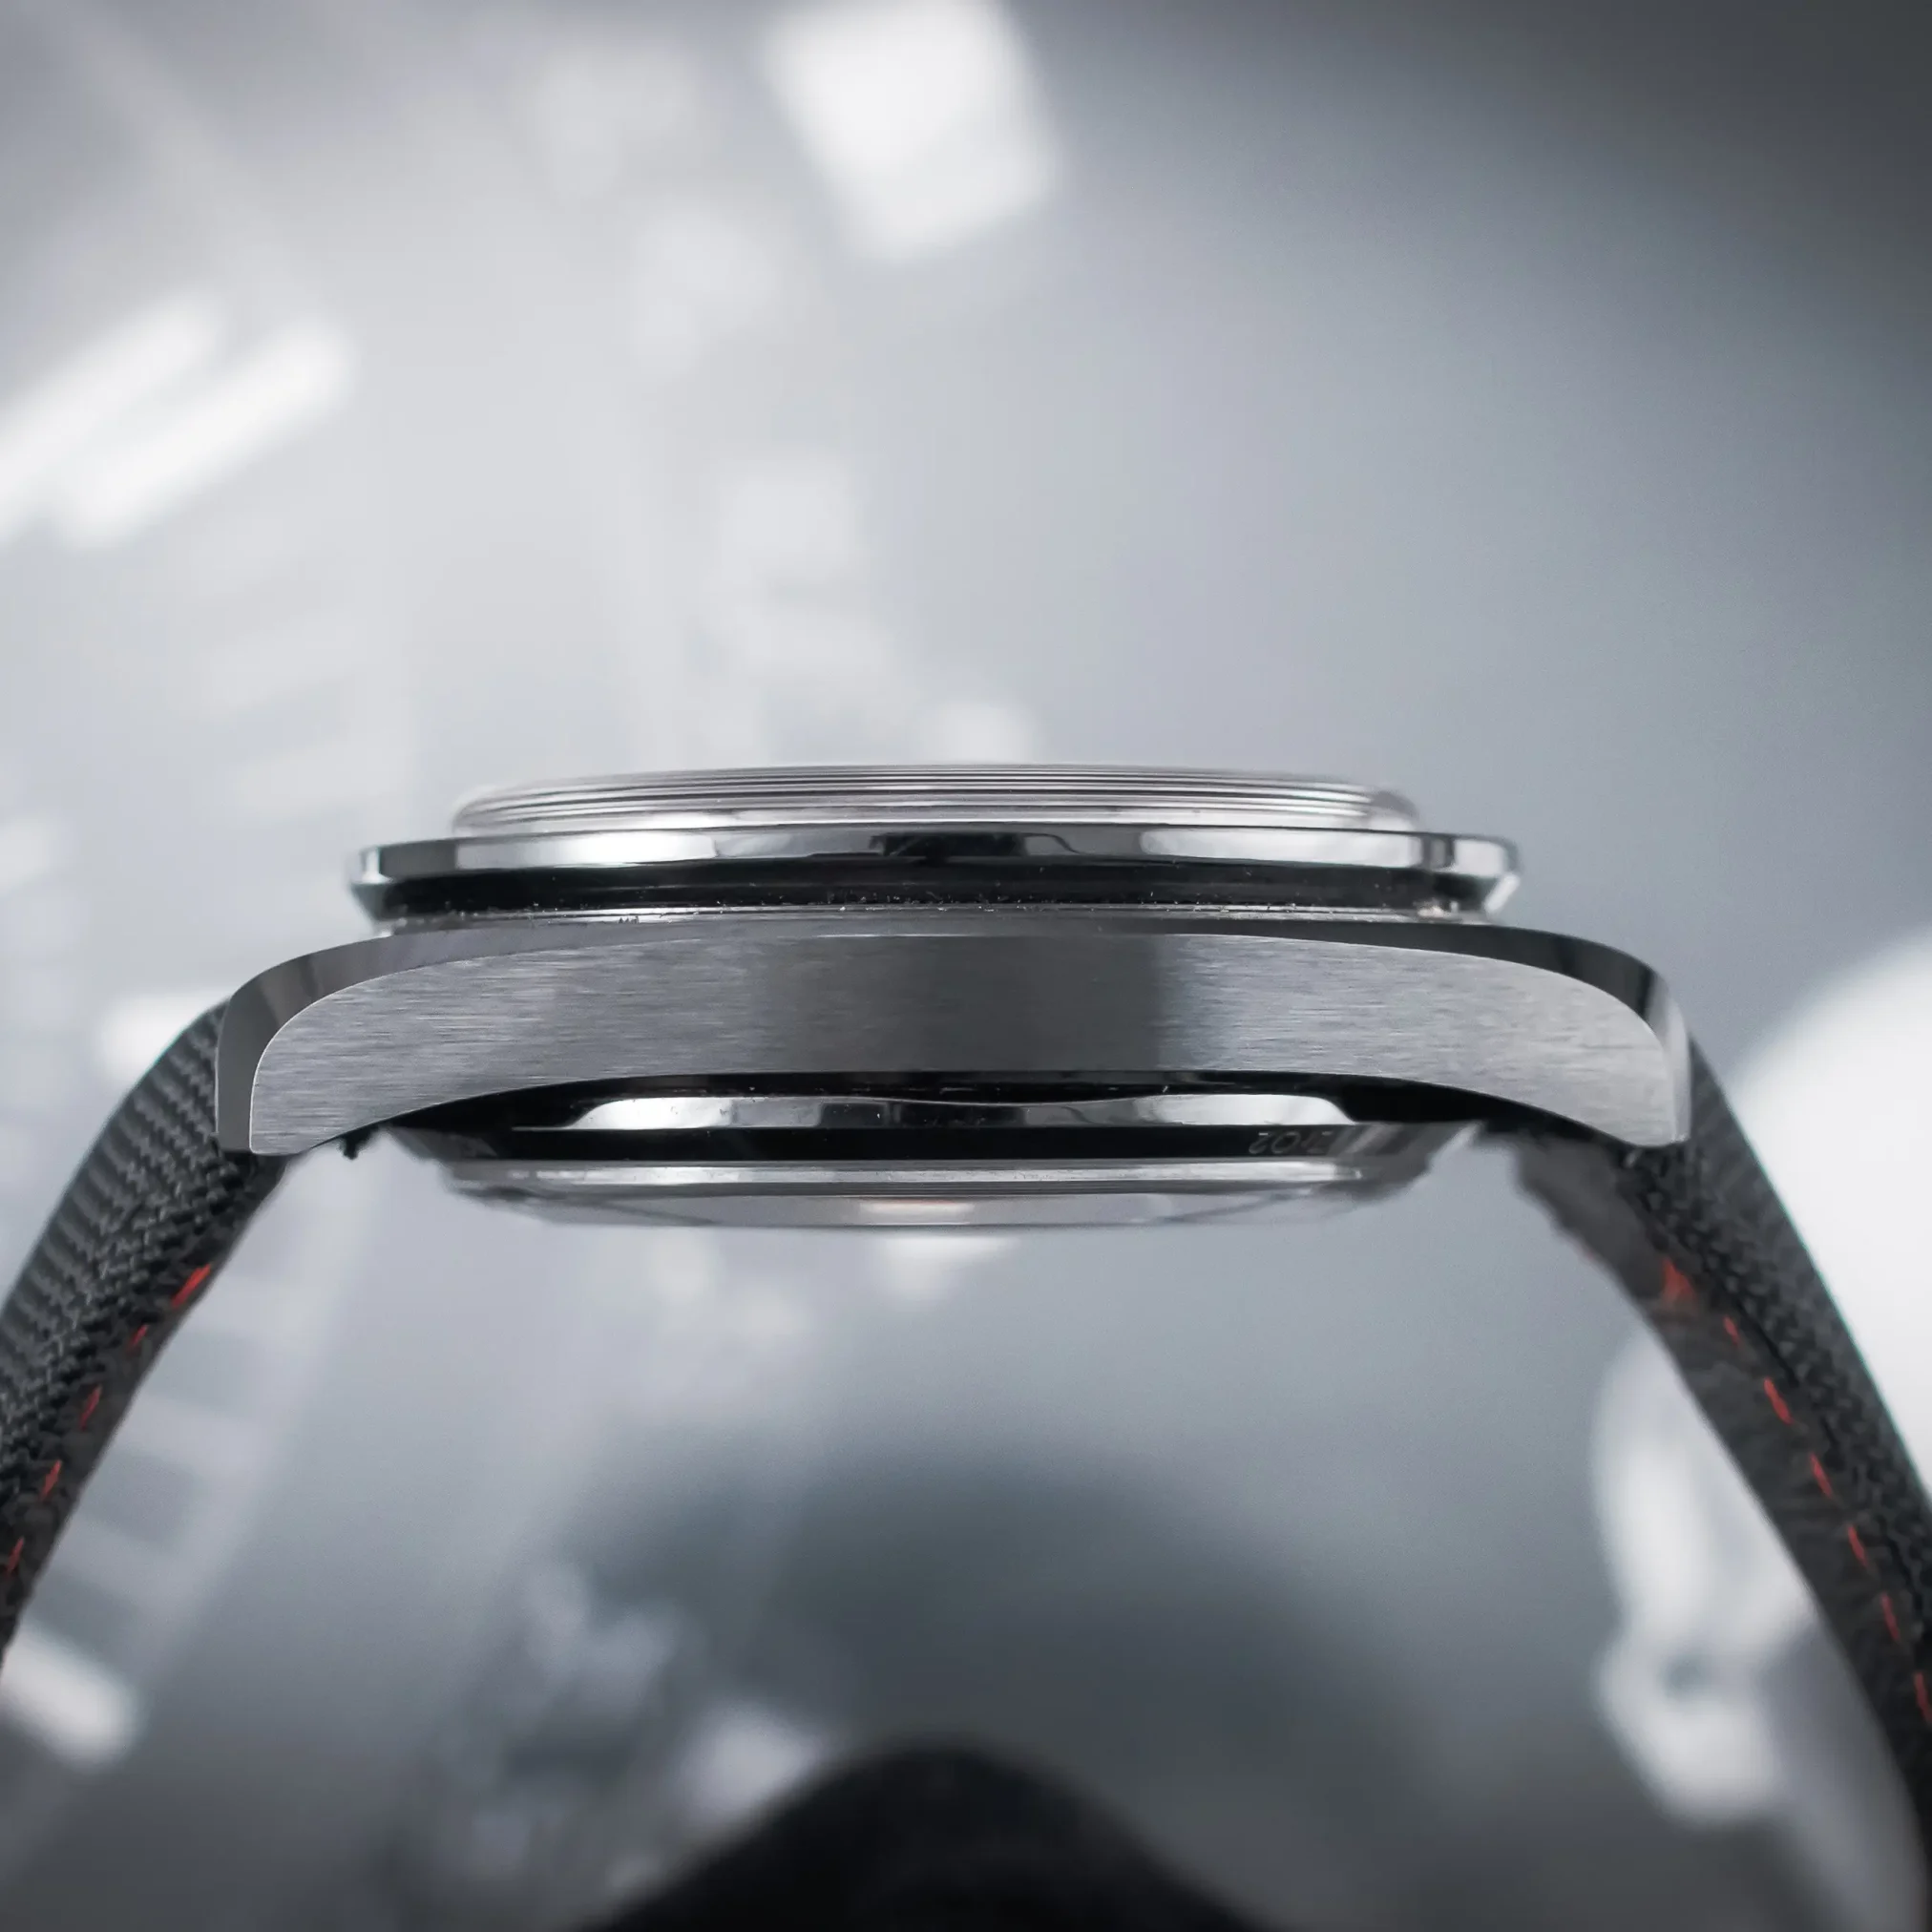 Đồng hồ Omega SpeedMaster Dark Side Of The Moon 311.92.44.51.01.00 mặt số màu đen. Dây đeo bằng vải. Thân vỏ bằng ceramic.